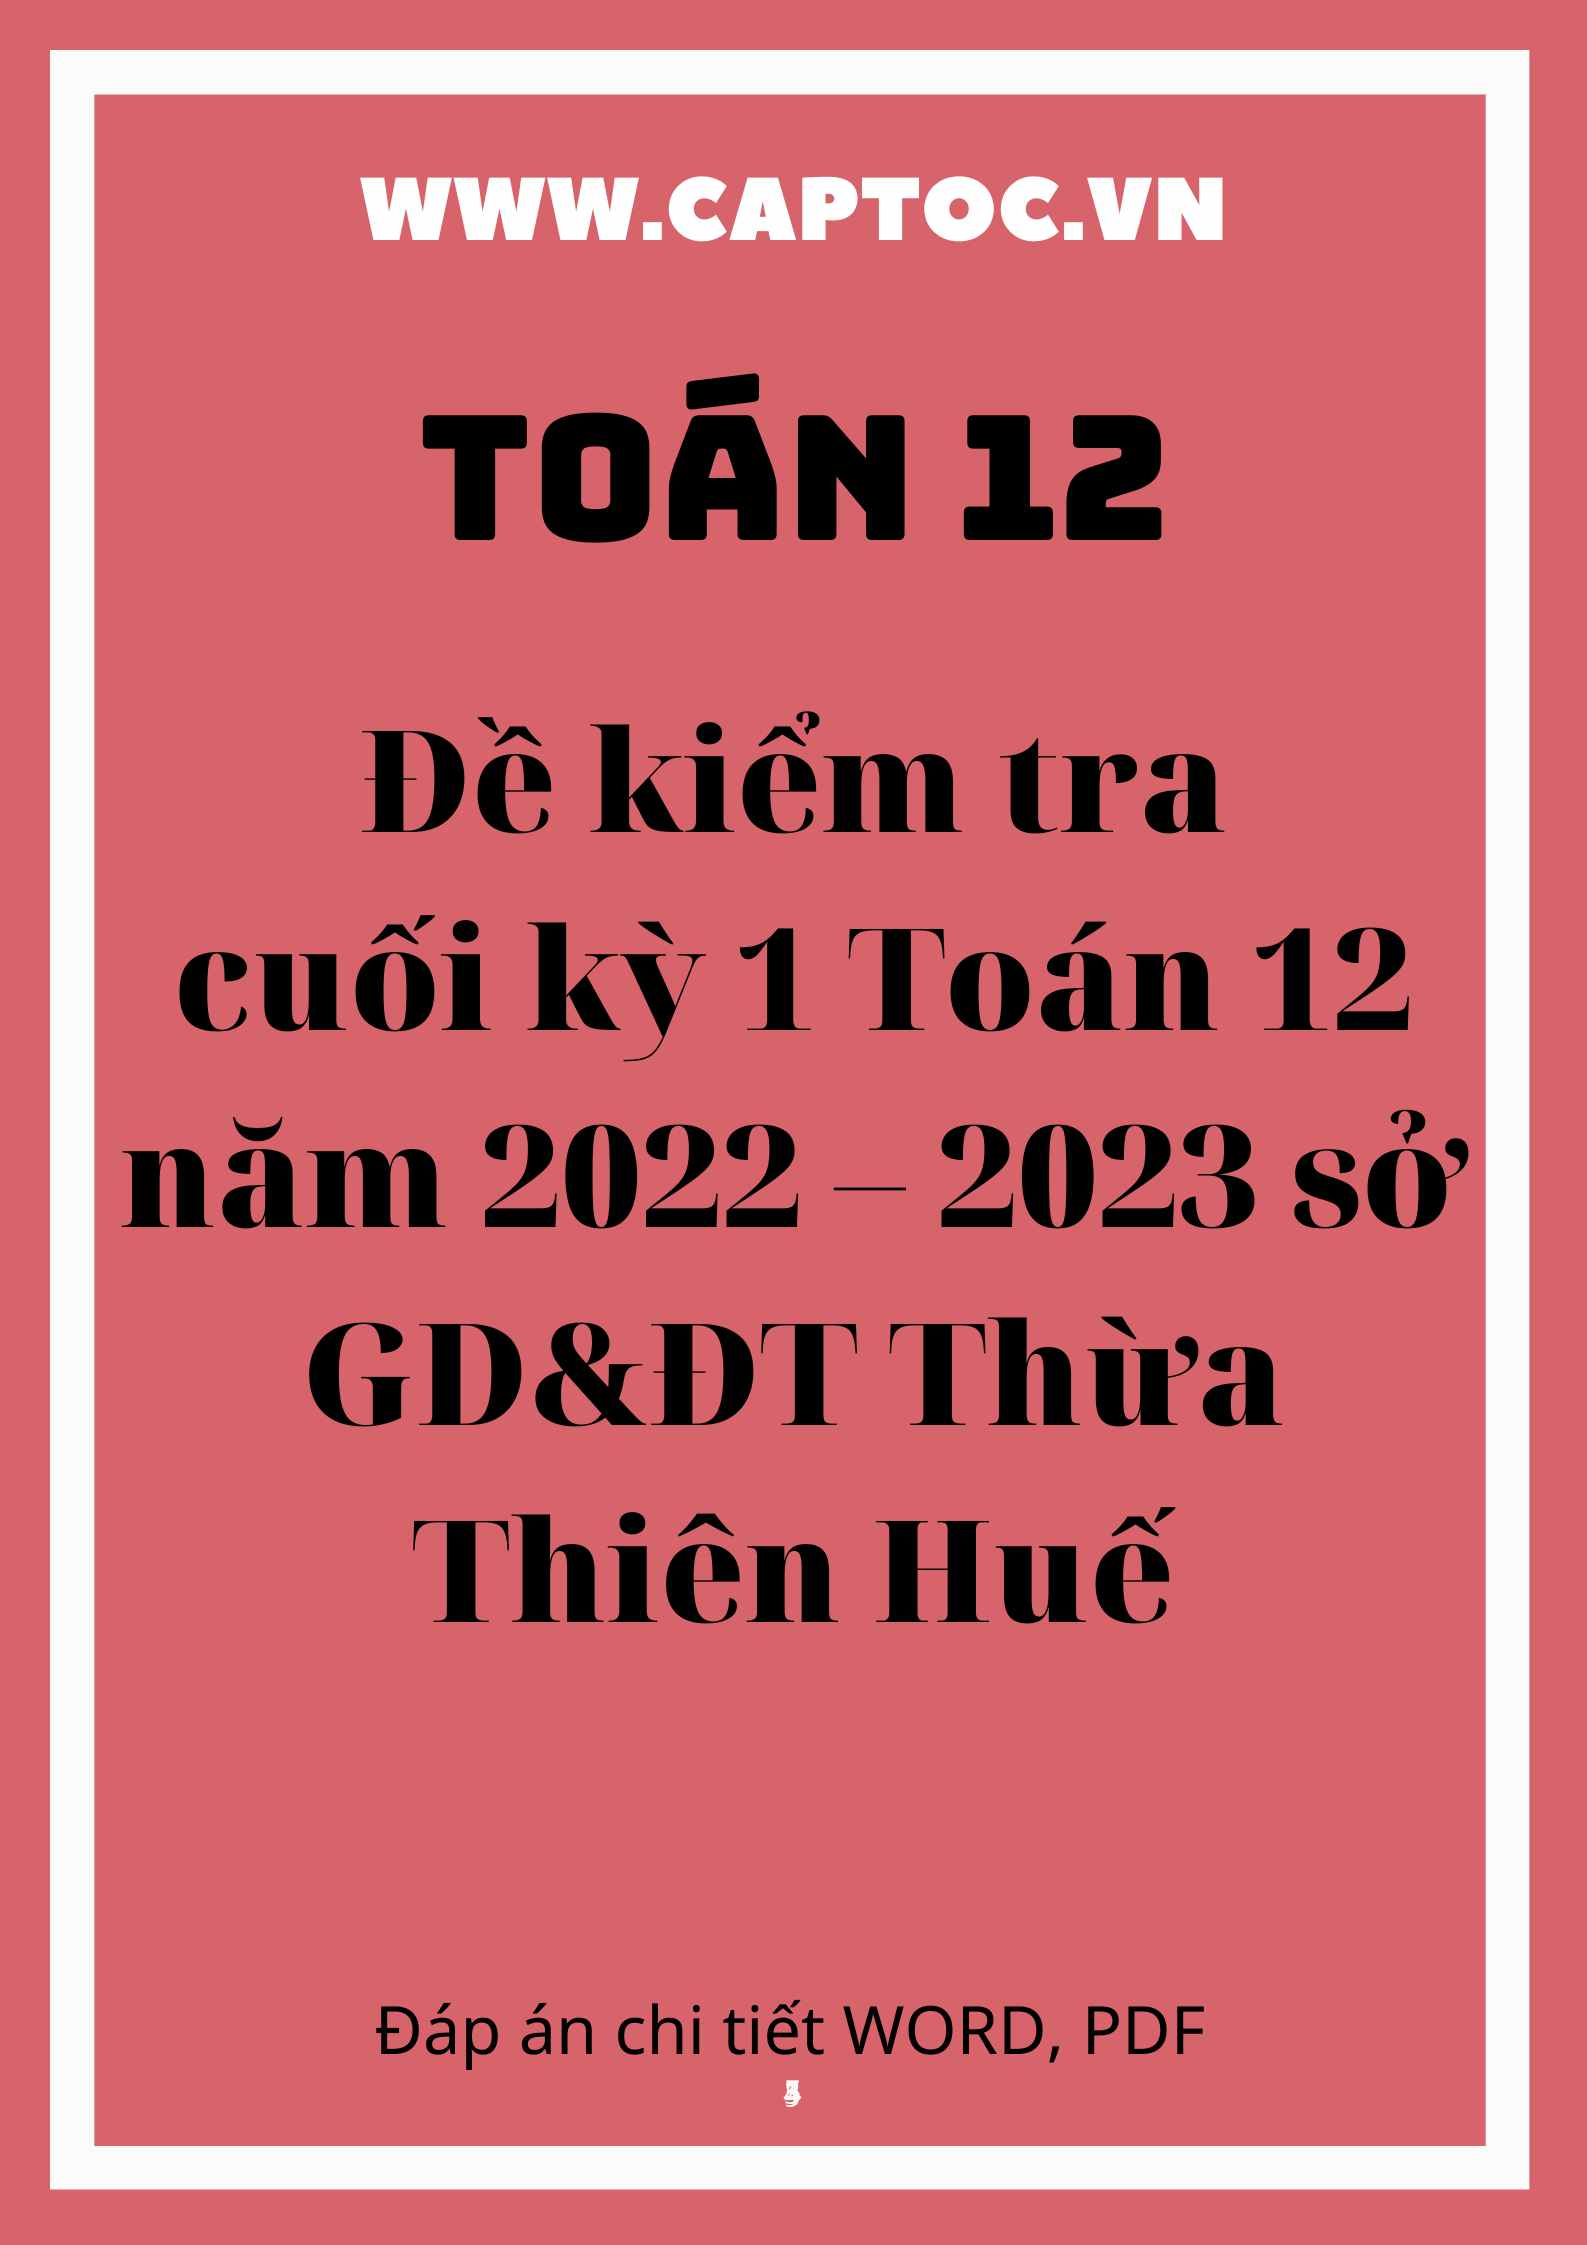 Đề kiểm tra cuối kì 1 Toán 12 năm 2022 – 2023 sở GD&ĐT Thừa Thiên Huế